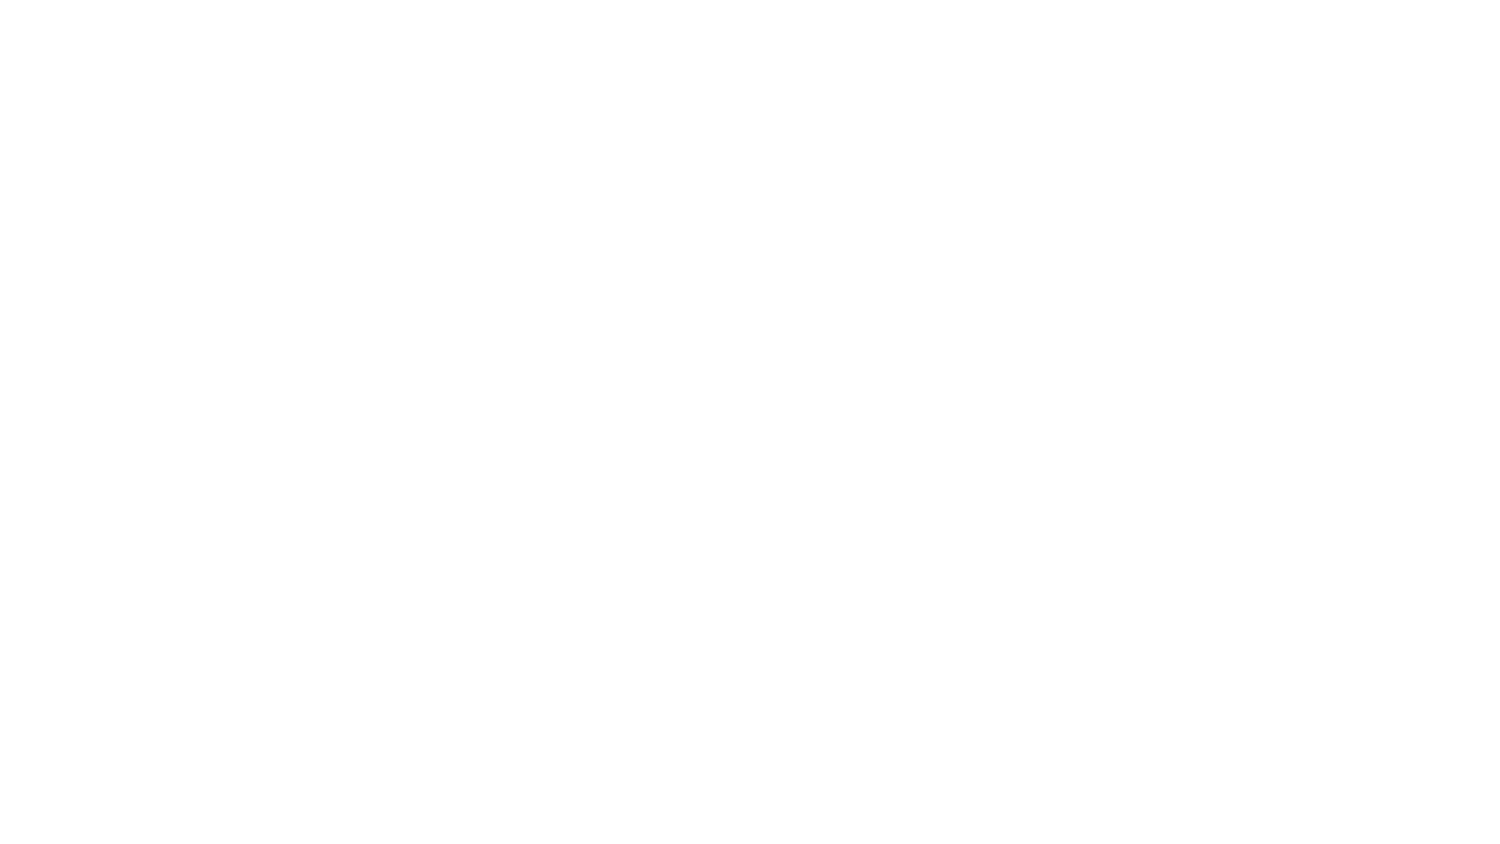 WellFest Ireland